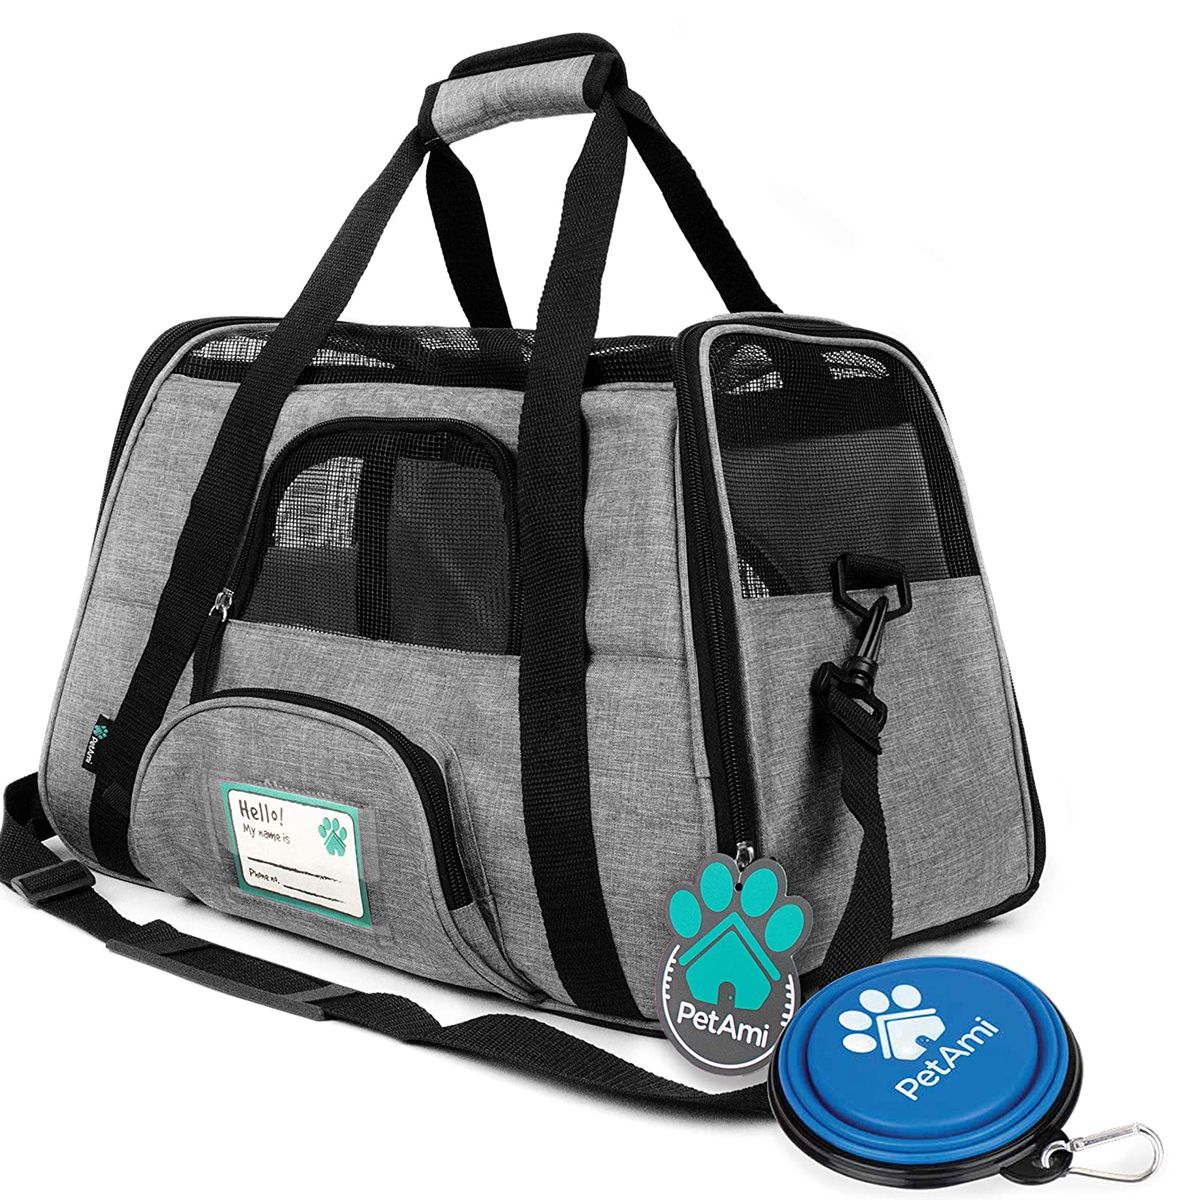 „Sherpa American Airlines“ avialinijų patvirtintas šunų ir kačių nešiojimo krepšys